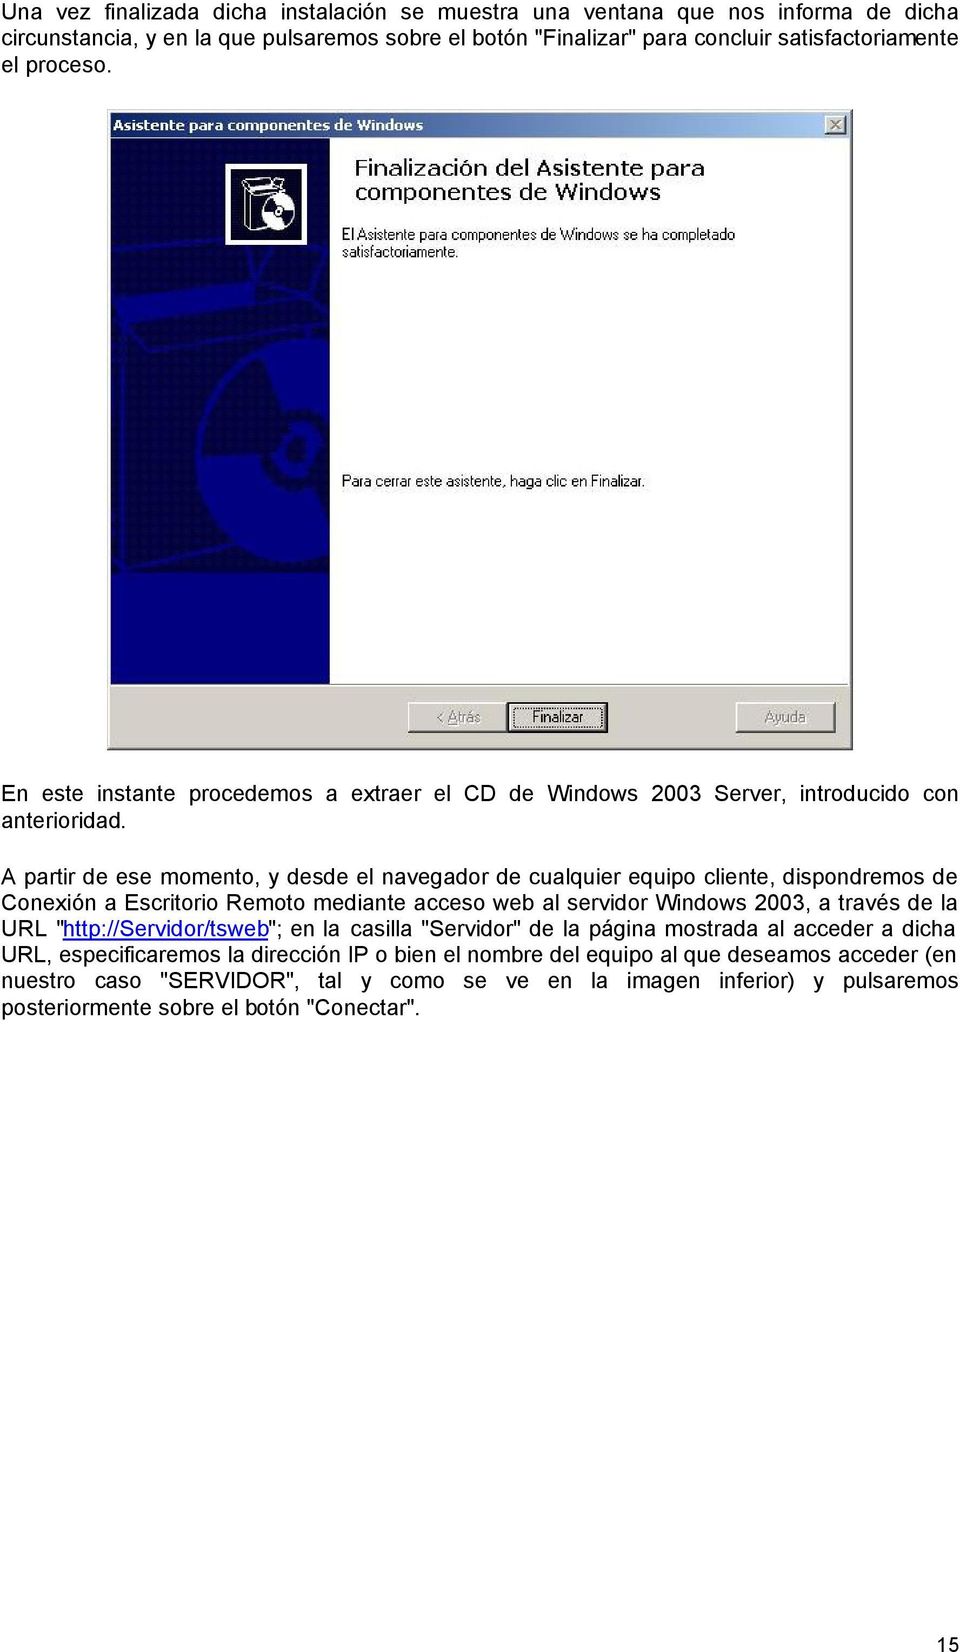 A partir de ese momento, y desde el navegador de cualquier equipo cliente, dispondremos de Conexión a Escritorio Remoto mediante acceso web al servidor Windows 2003, a través de la URL